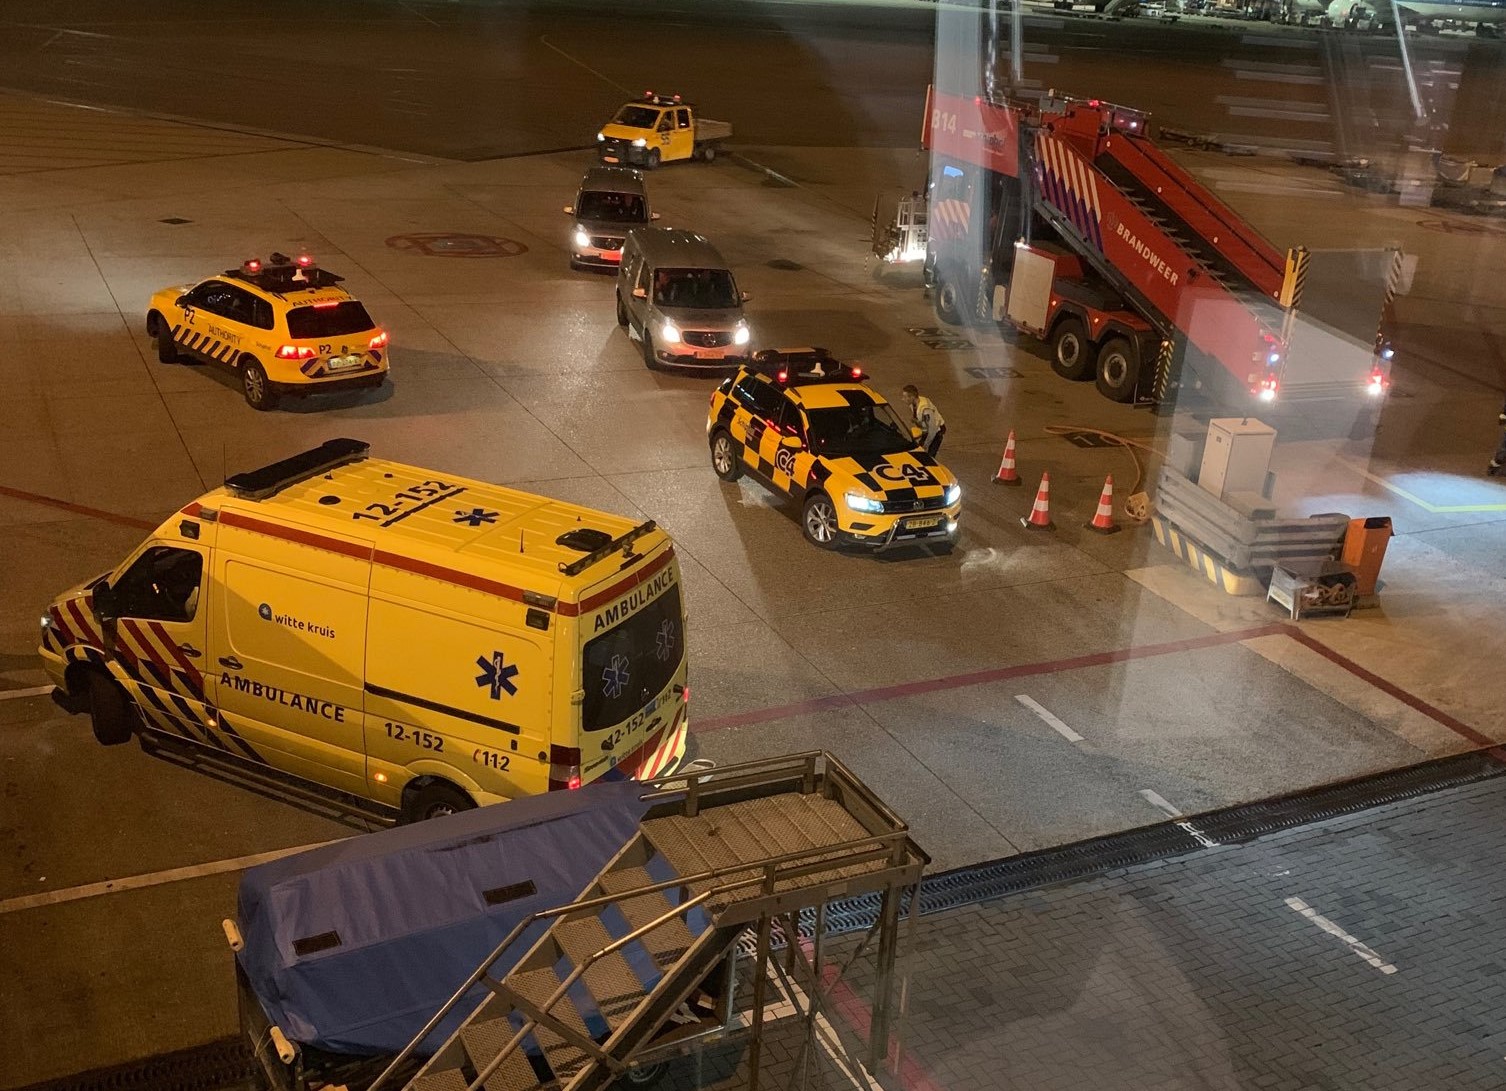 Erro de piloto dá origem a operação militar no aeroporto de Schiphol